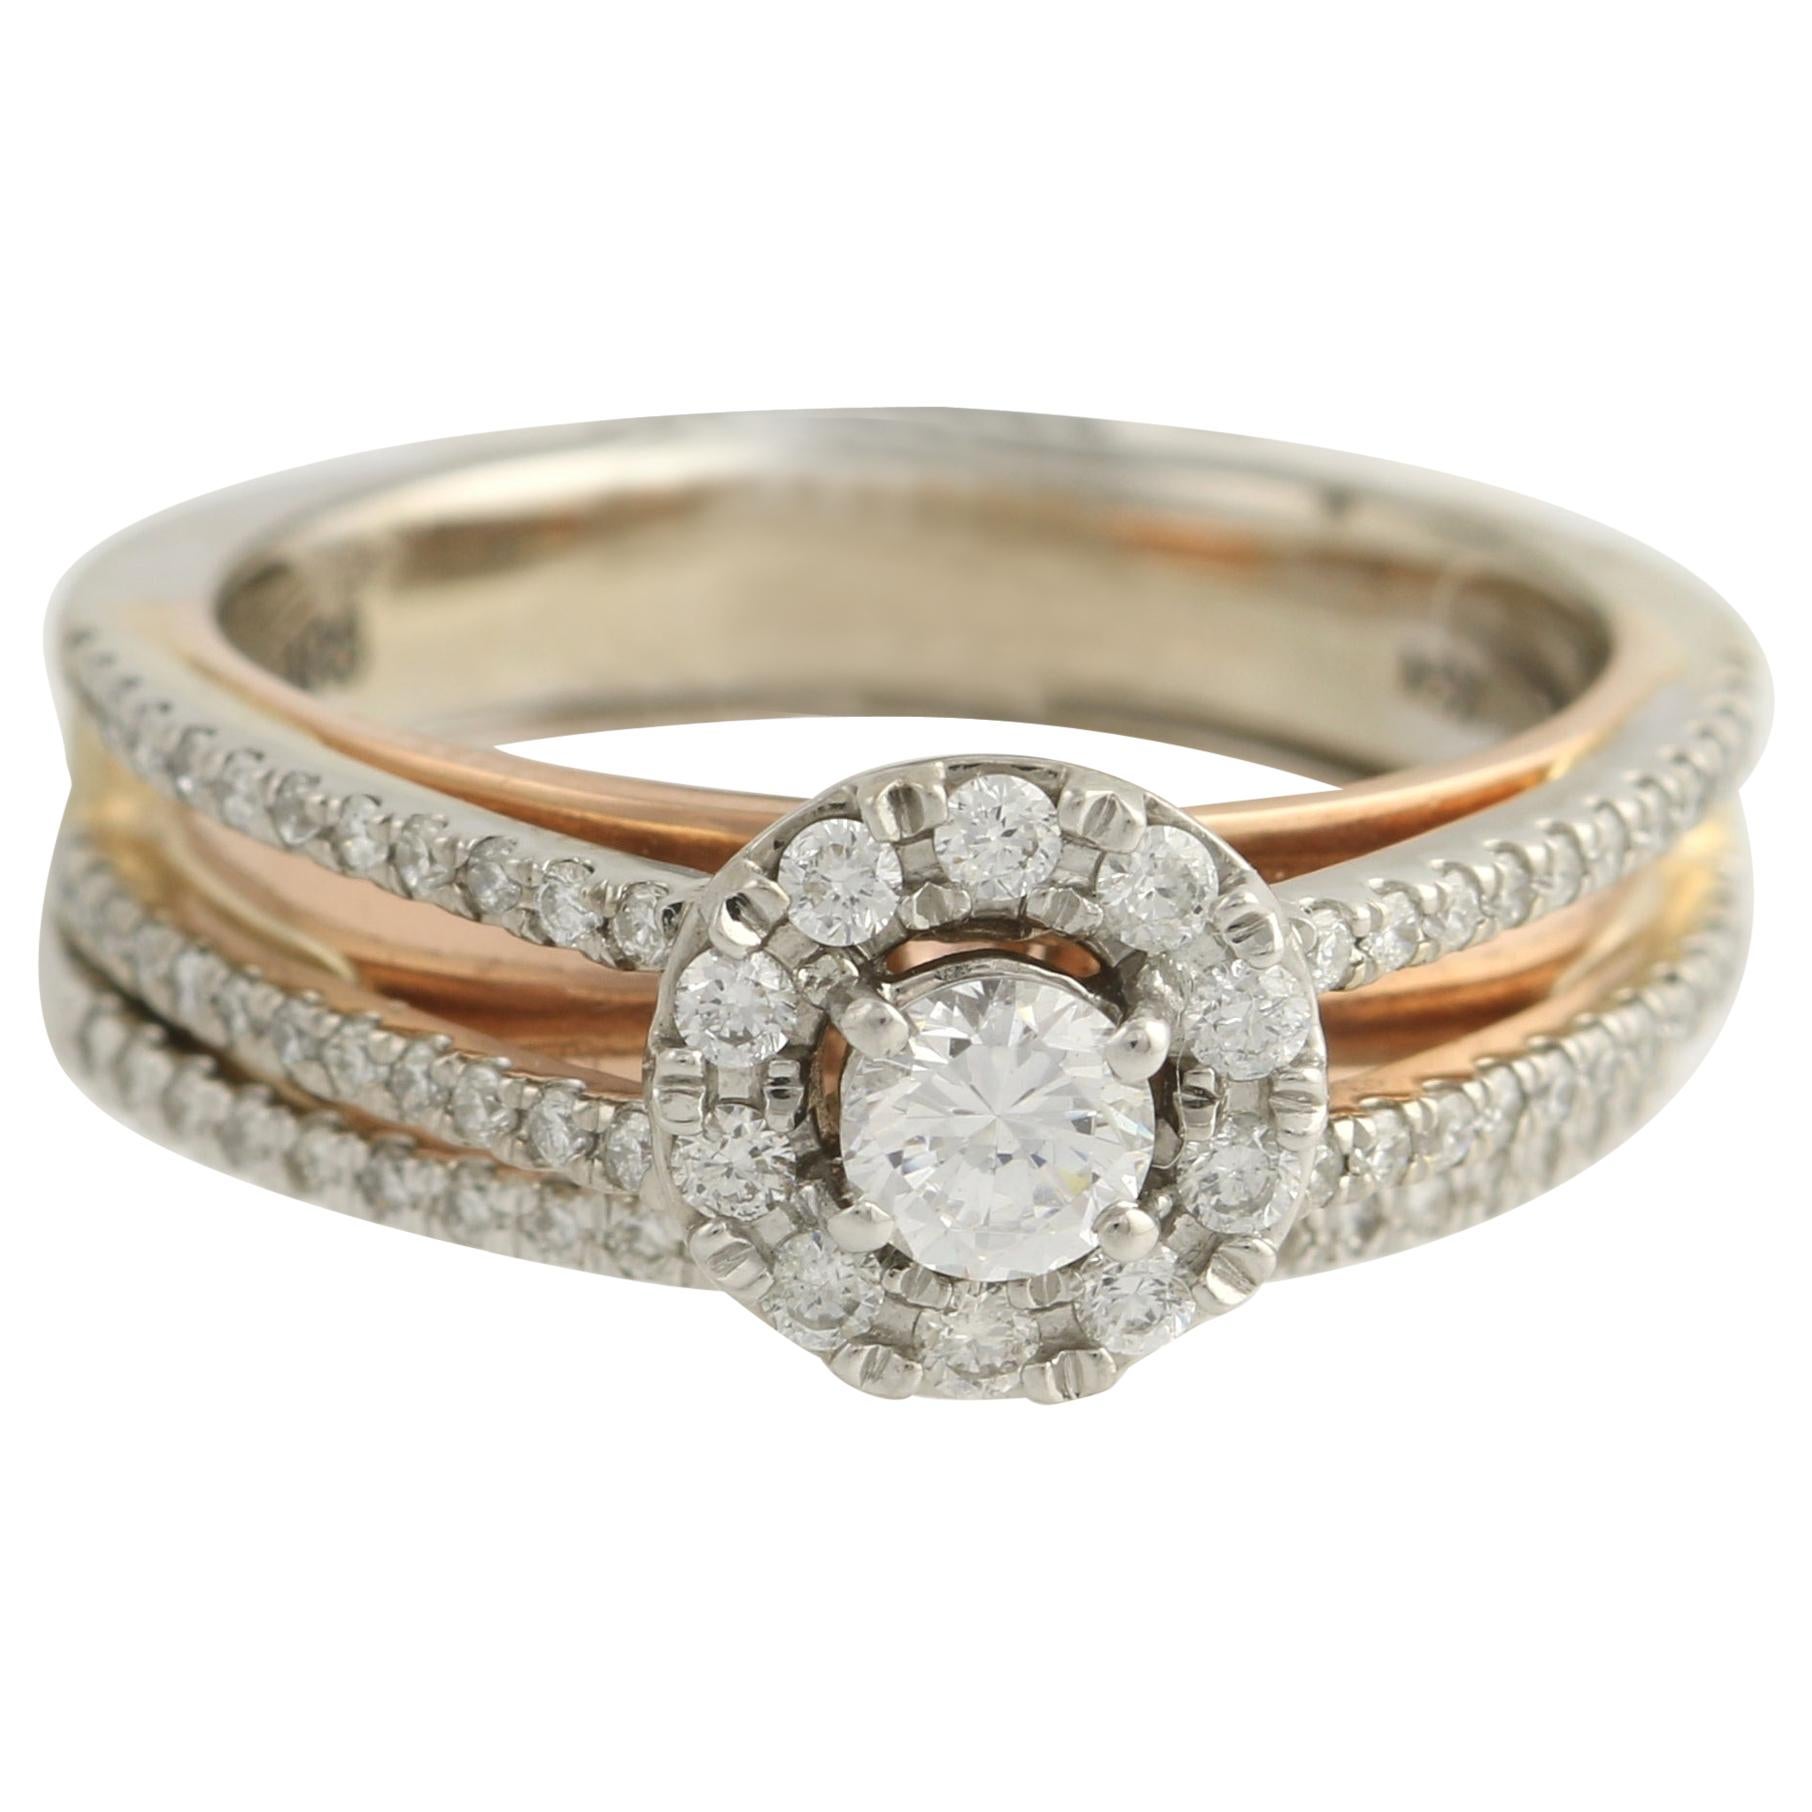 Diamond Ring and Wedding Band, 14 Karat White and Rose Gold Halo .77 Carat